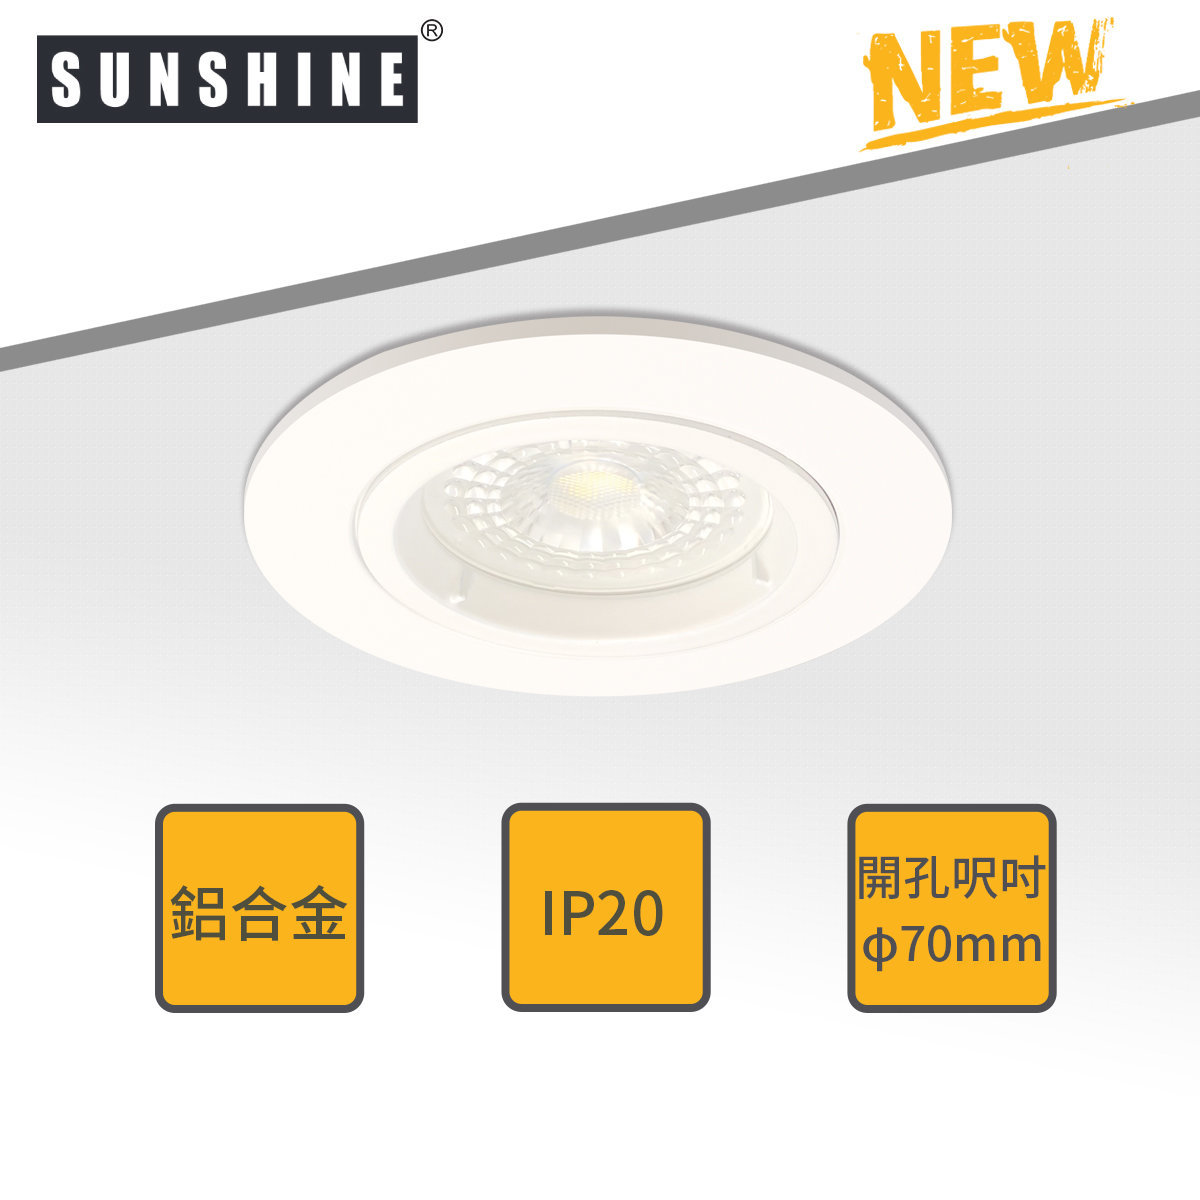 陽光| FDNA-C1 圓形嵌入式筒燈燈具[開窿直徑: 70mm] (不連GU10燈膽及不